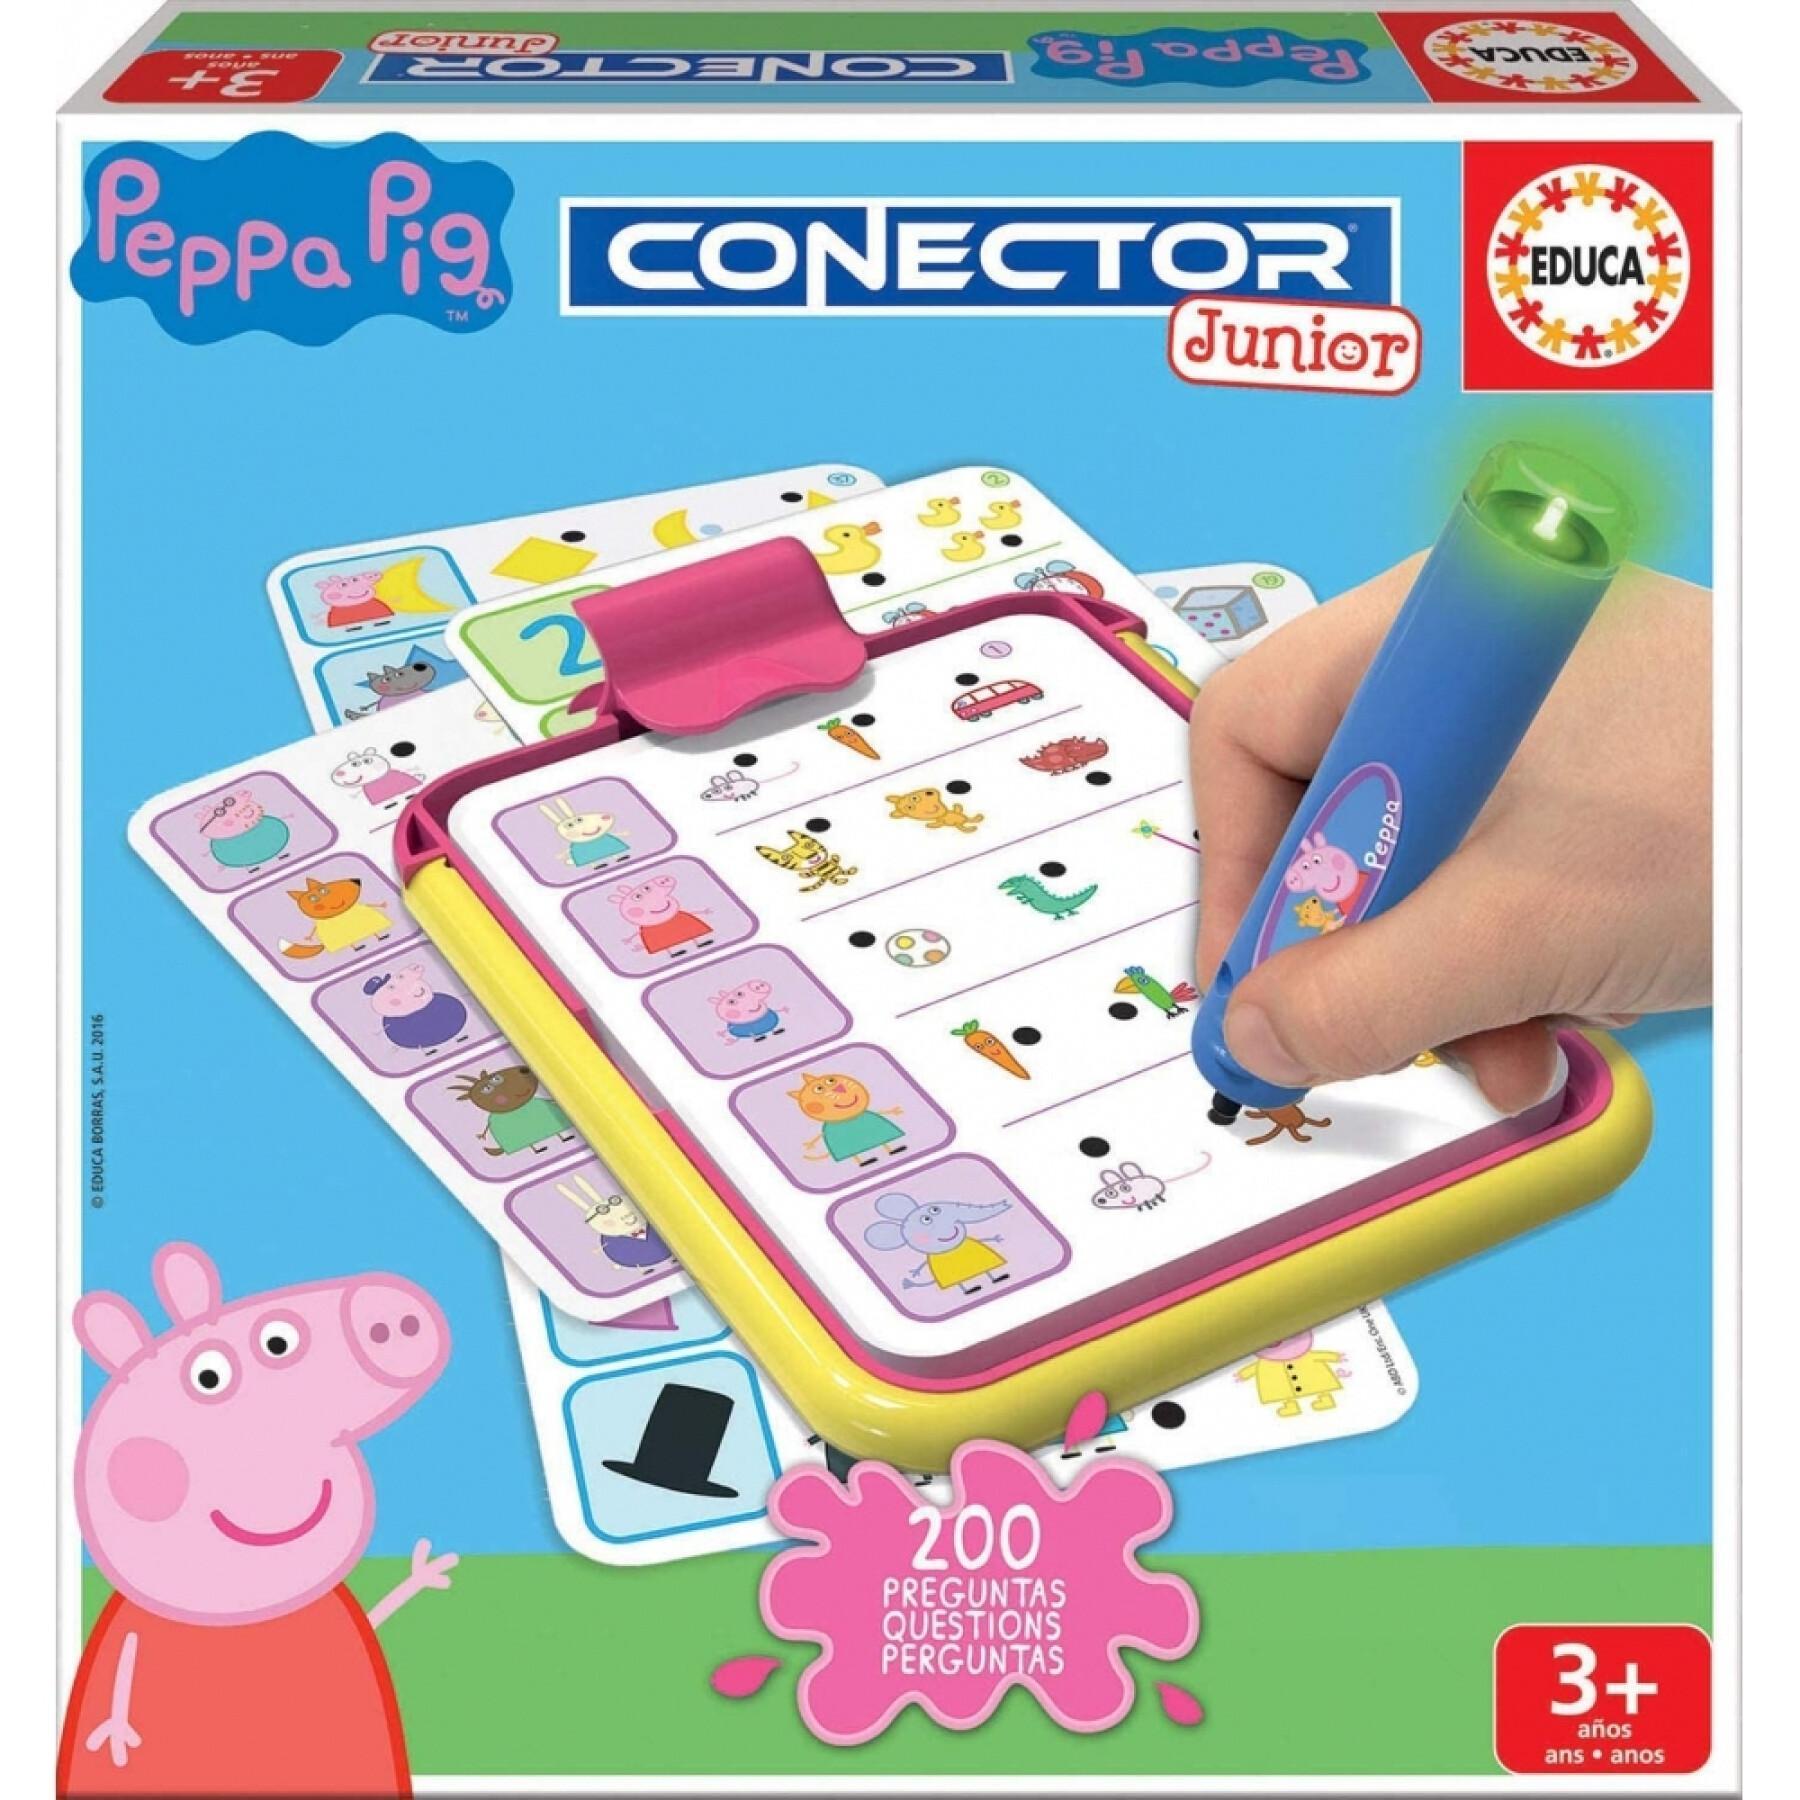 Jeux éducatifs de questions-réponses Peppa Pig Connector